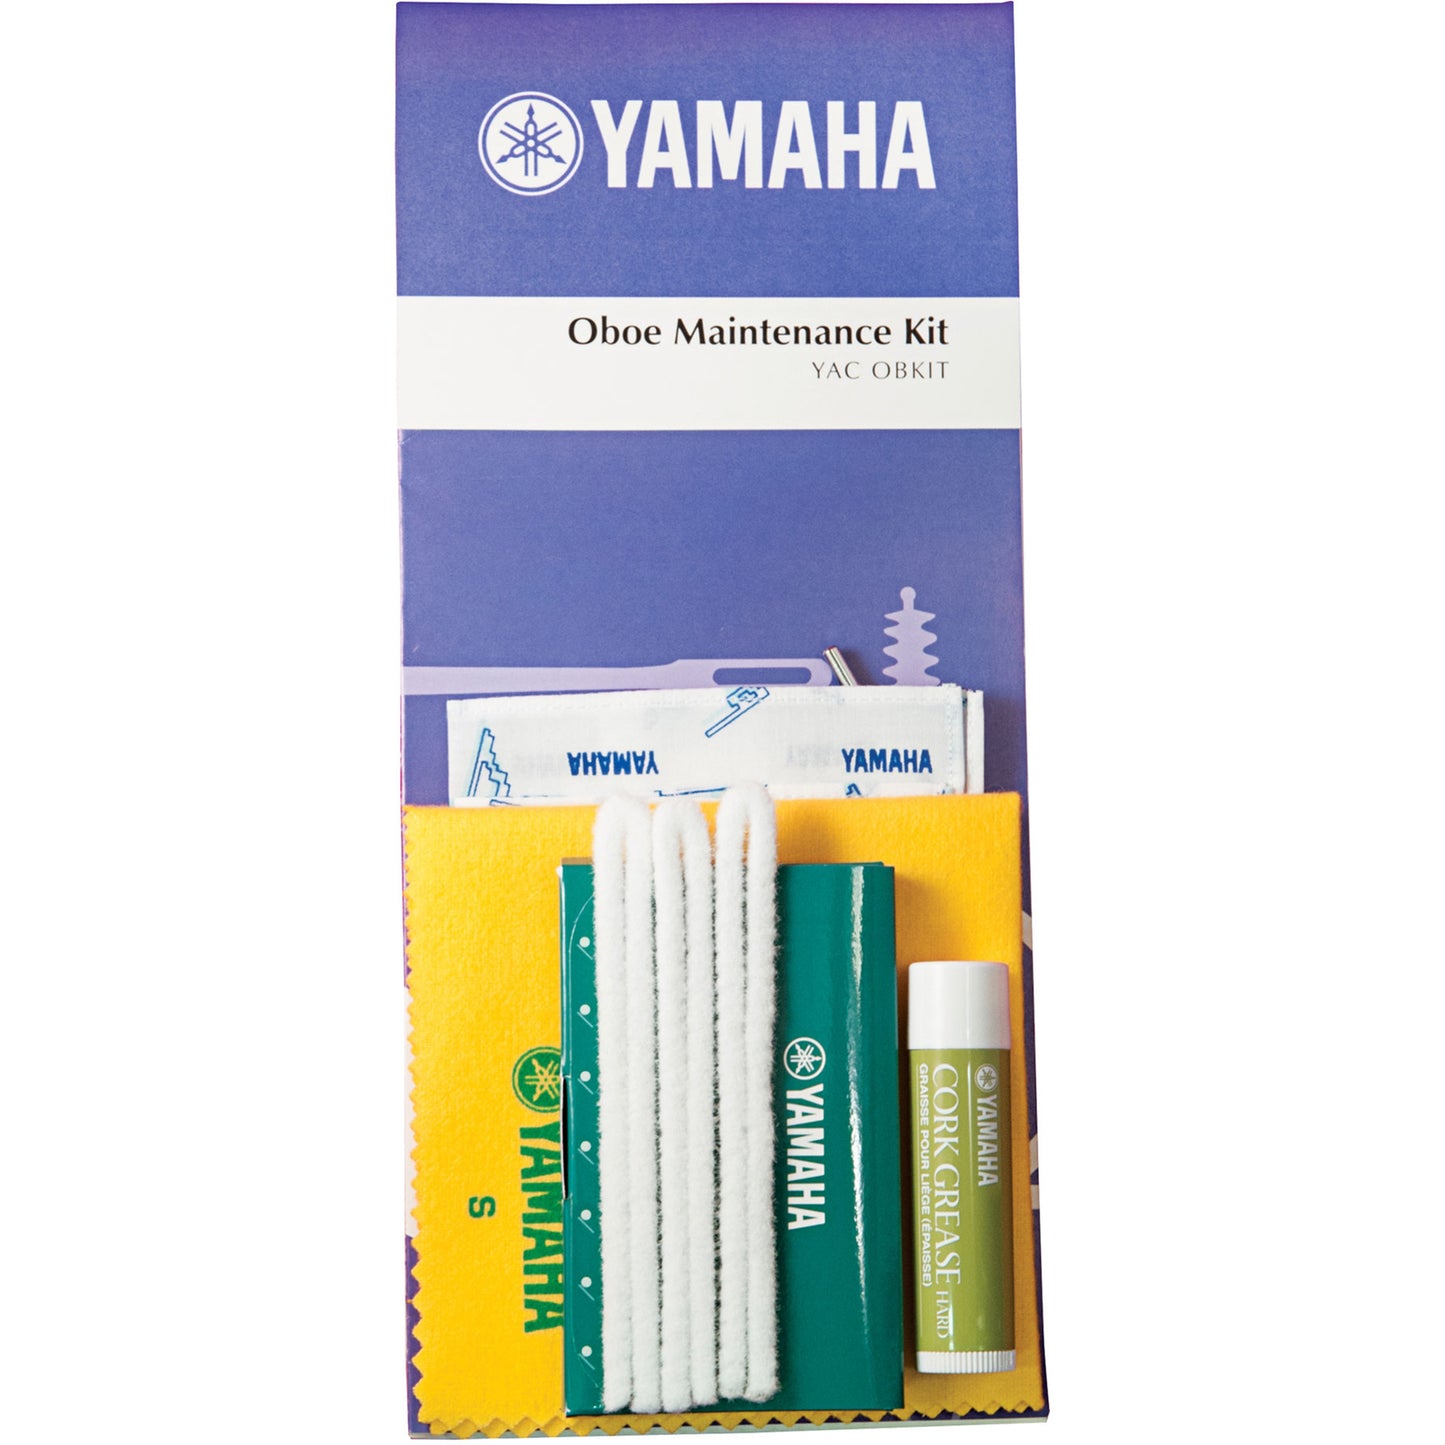 Yamaha YACOBKIT Oboe Maintenance Kit